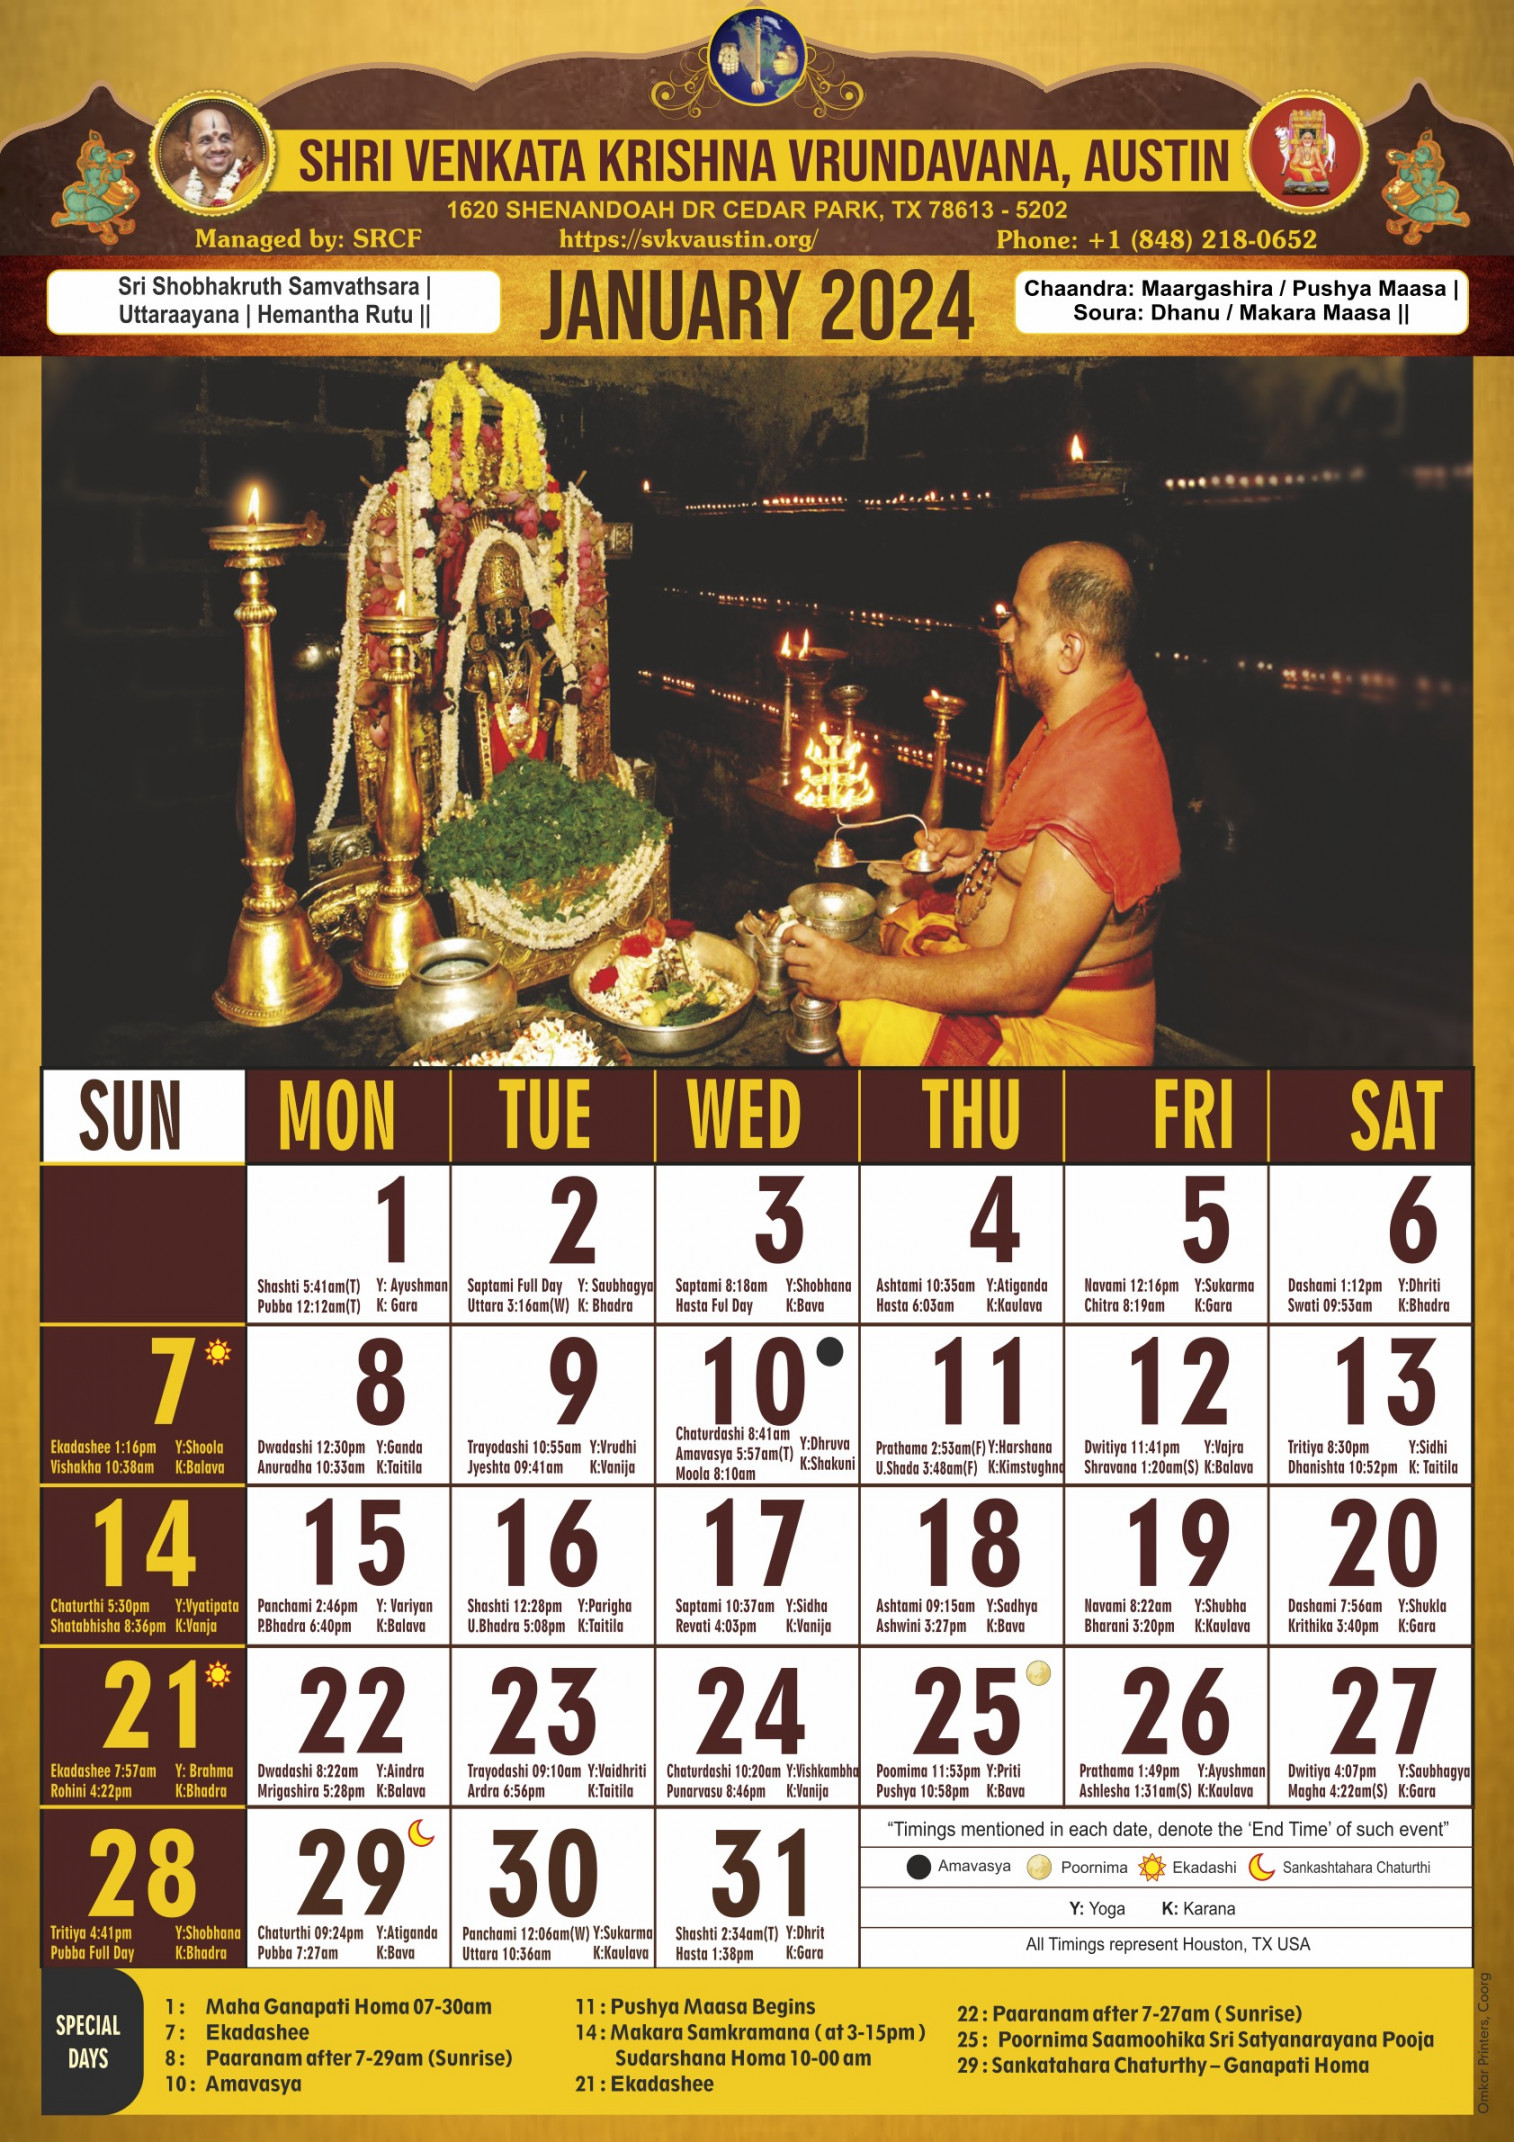 Calendar Release – Shri Venkata Krishna Vrundavana Austin